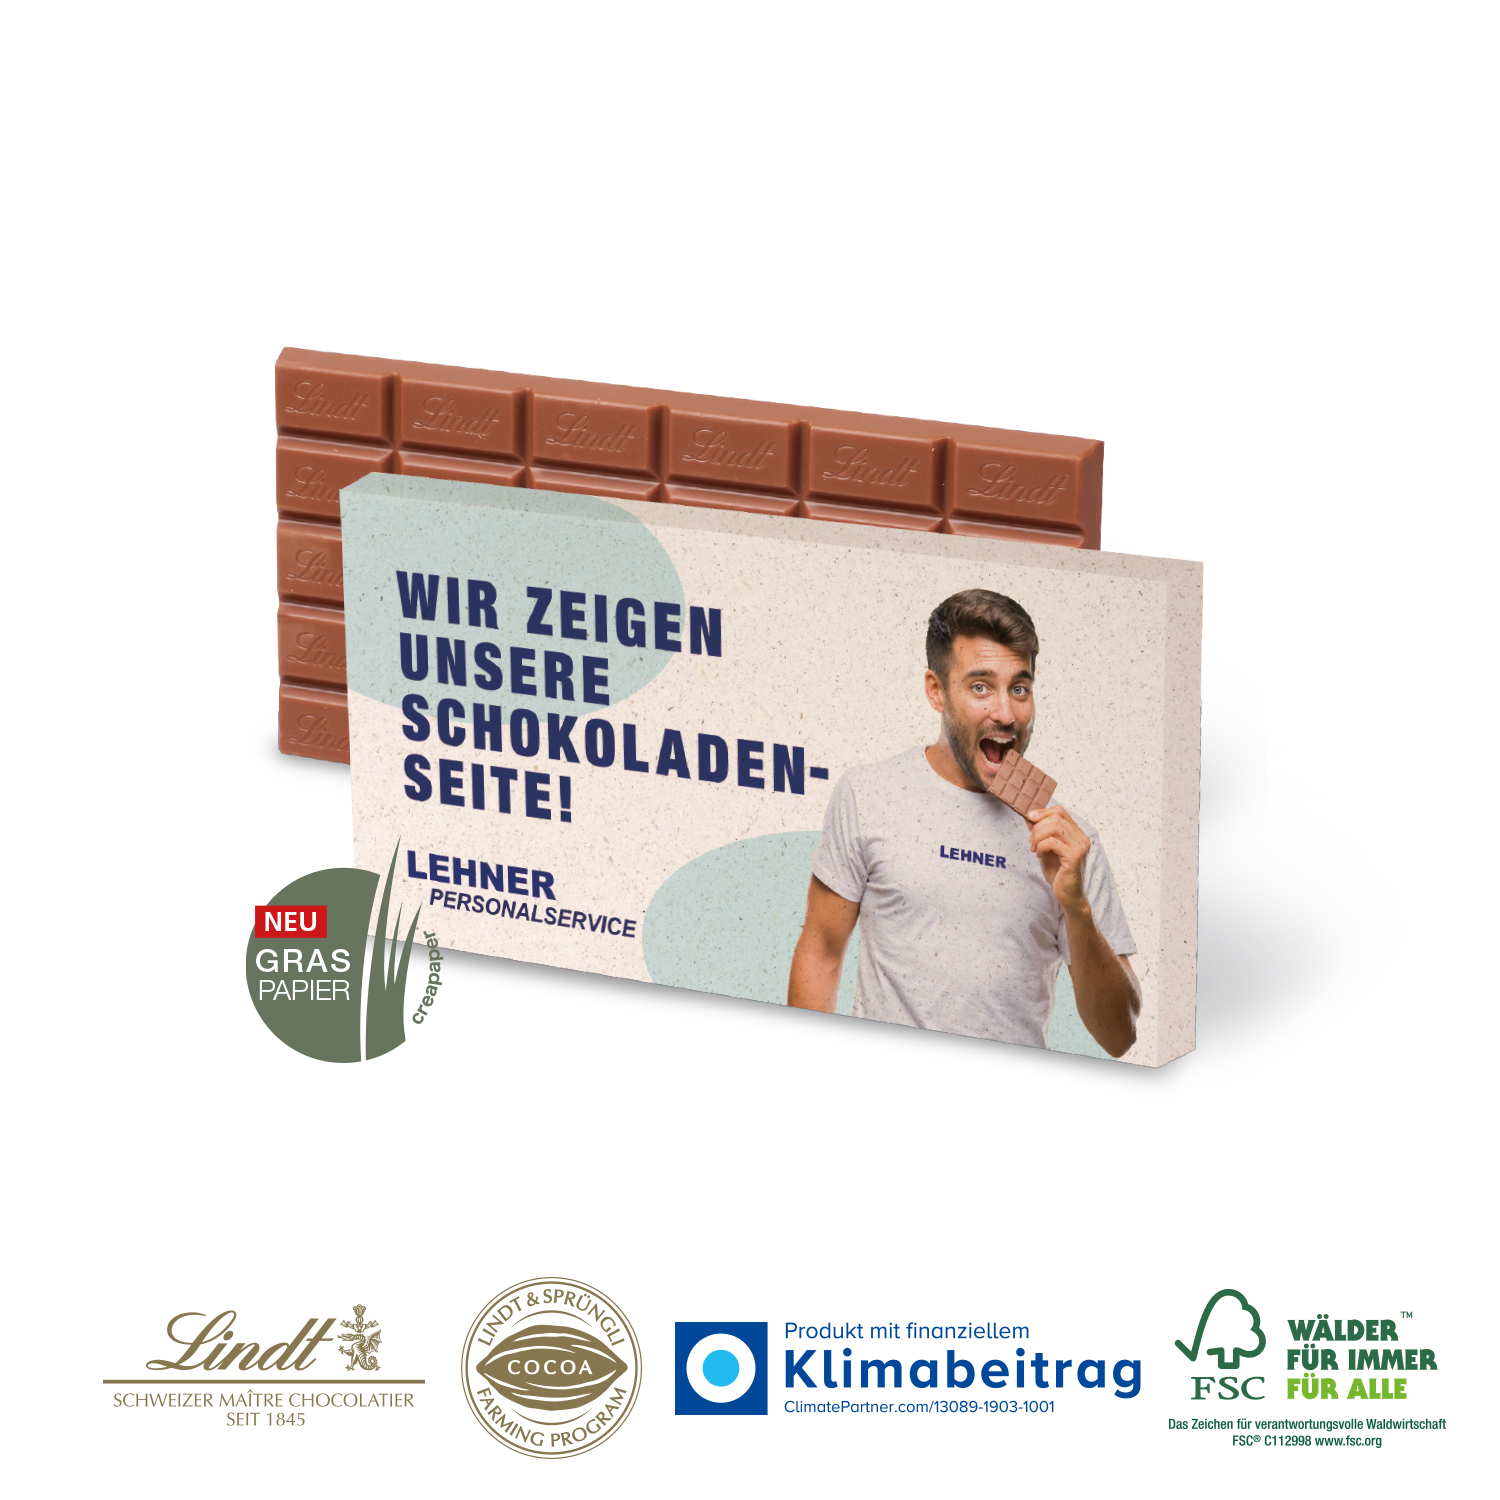 Premium Schokolade von Lindt 100g, inkl. 4-farbigem Druck